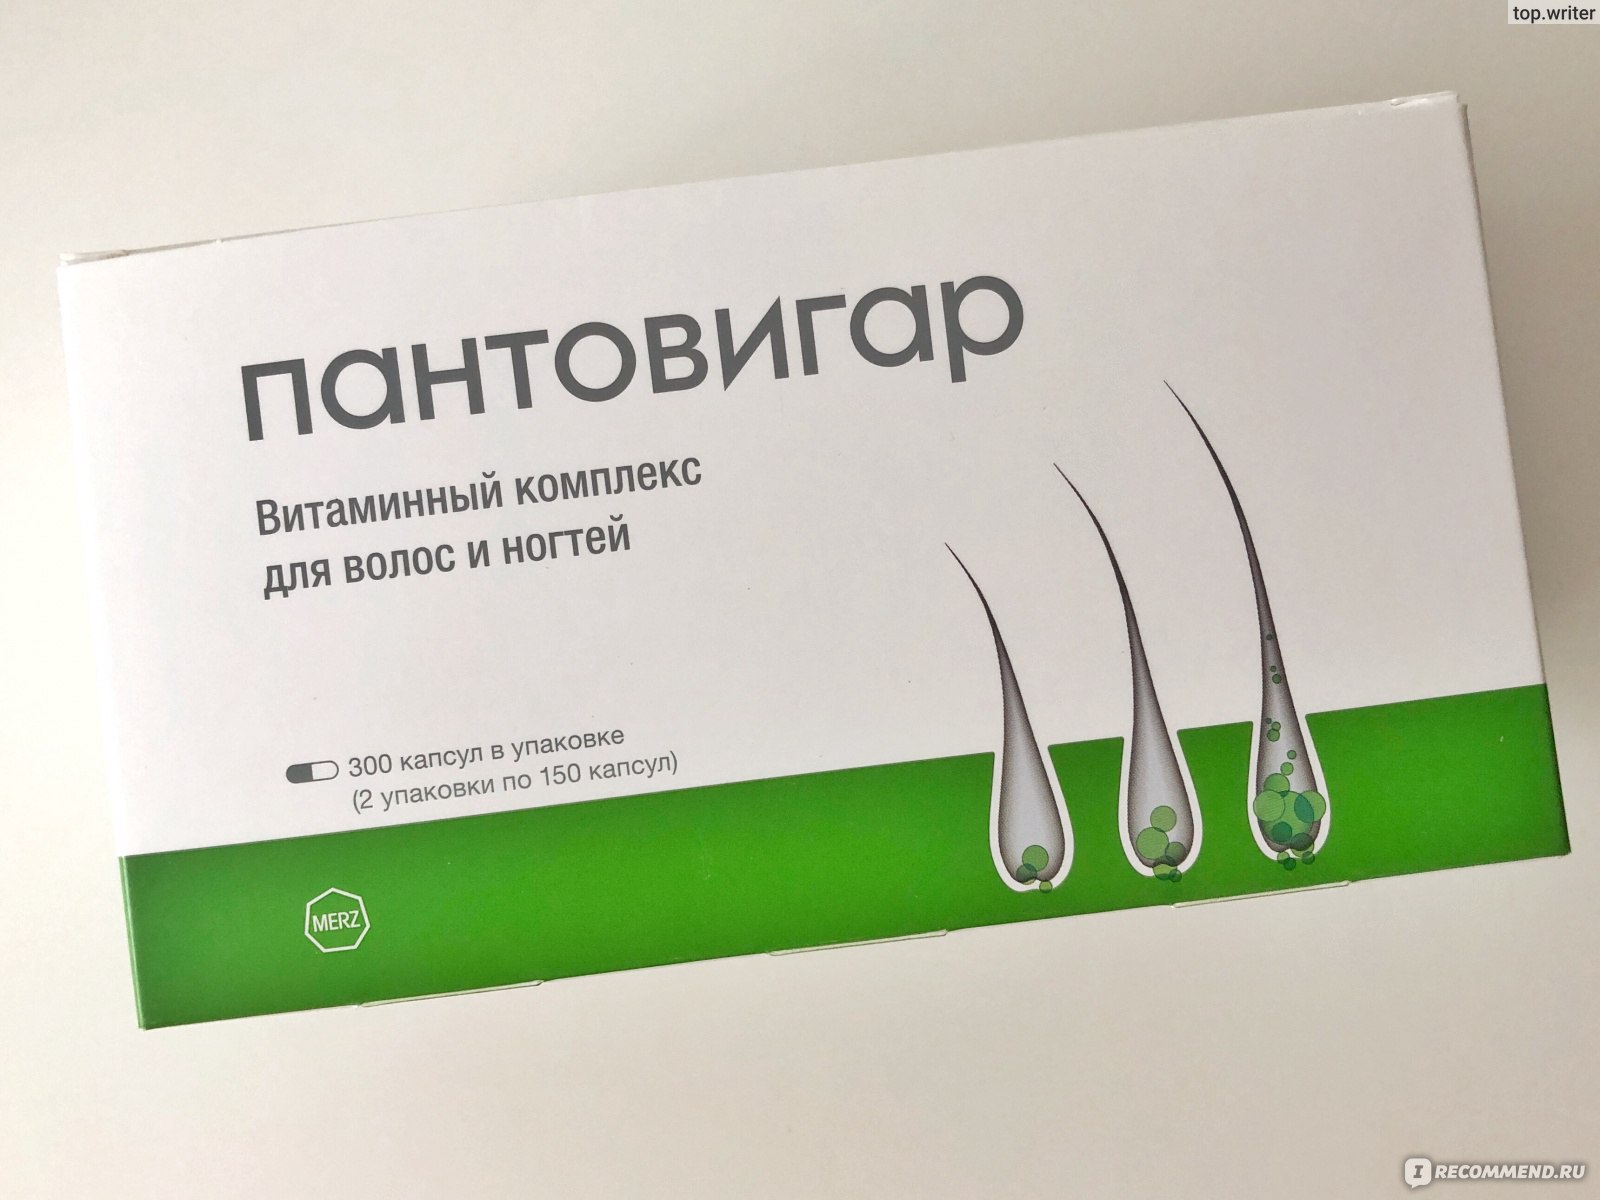 Купить Витамины Пантовигар Для Волос В Москве